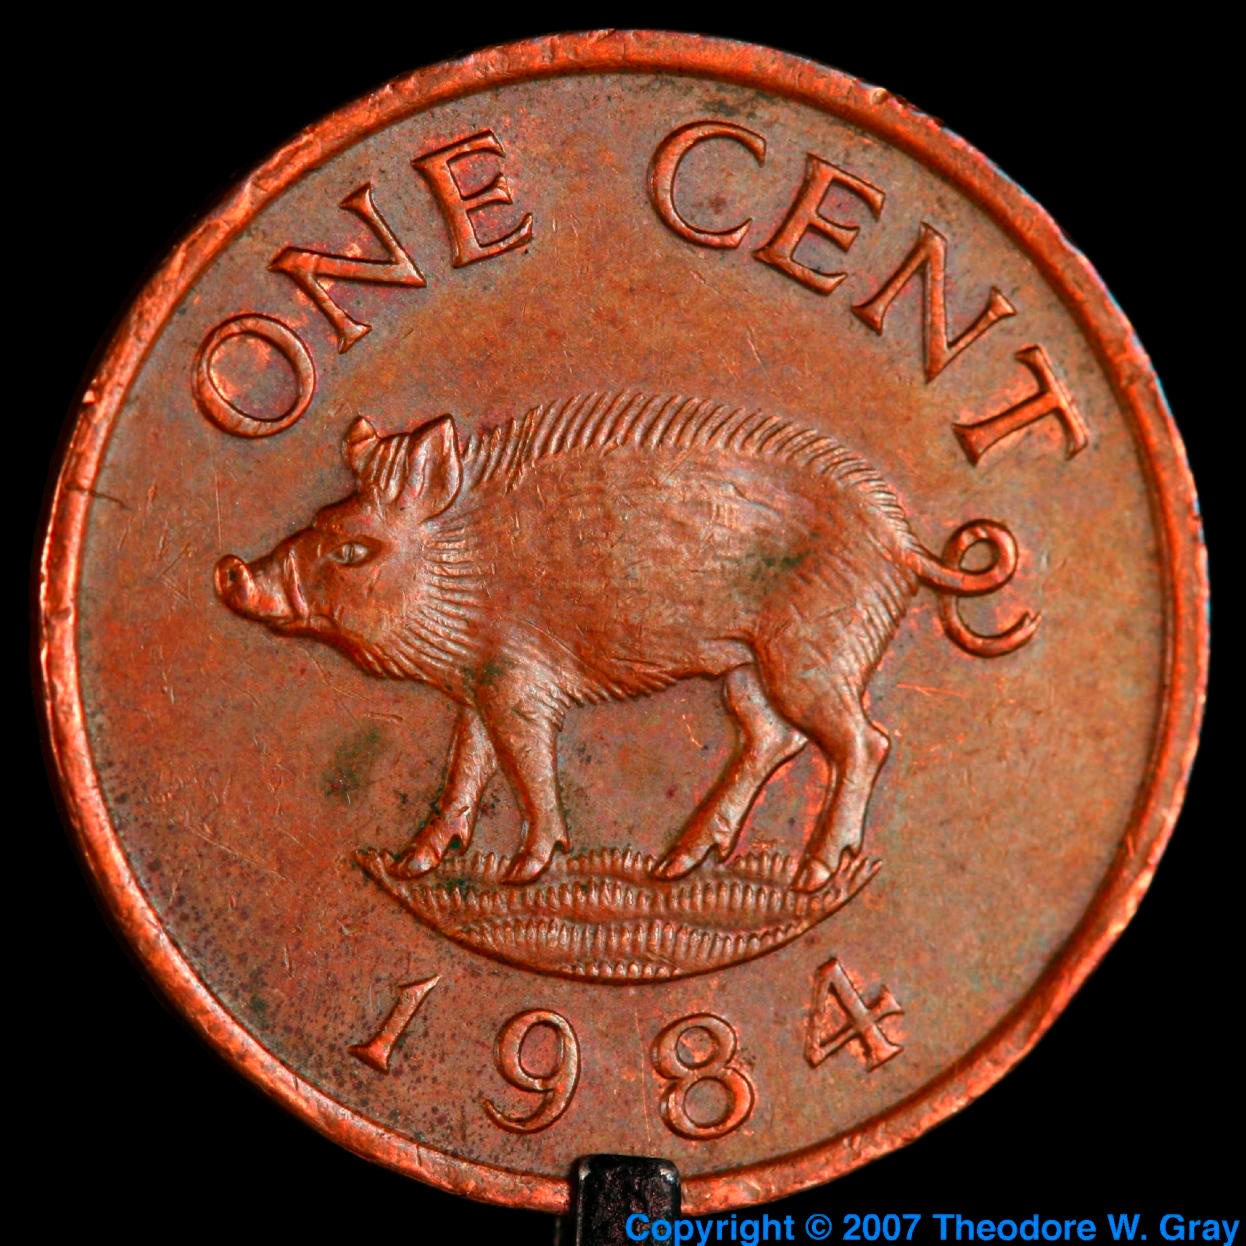 Copper Copper Bermuda pig coin